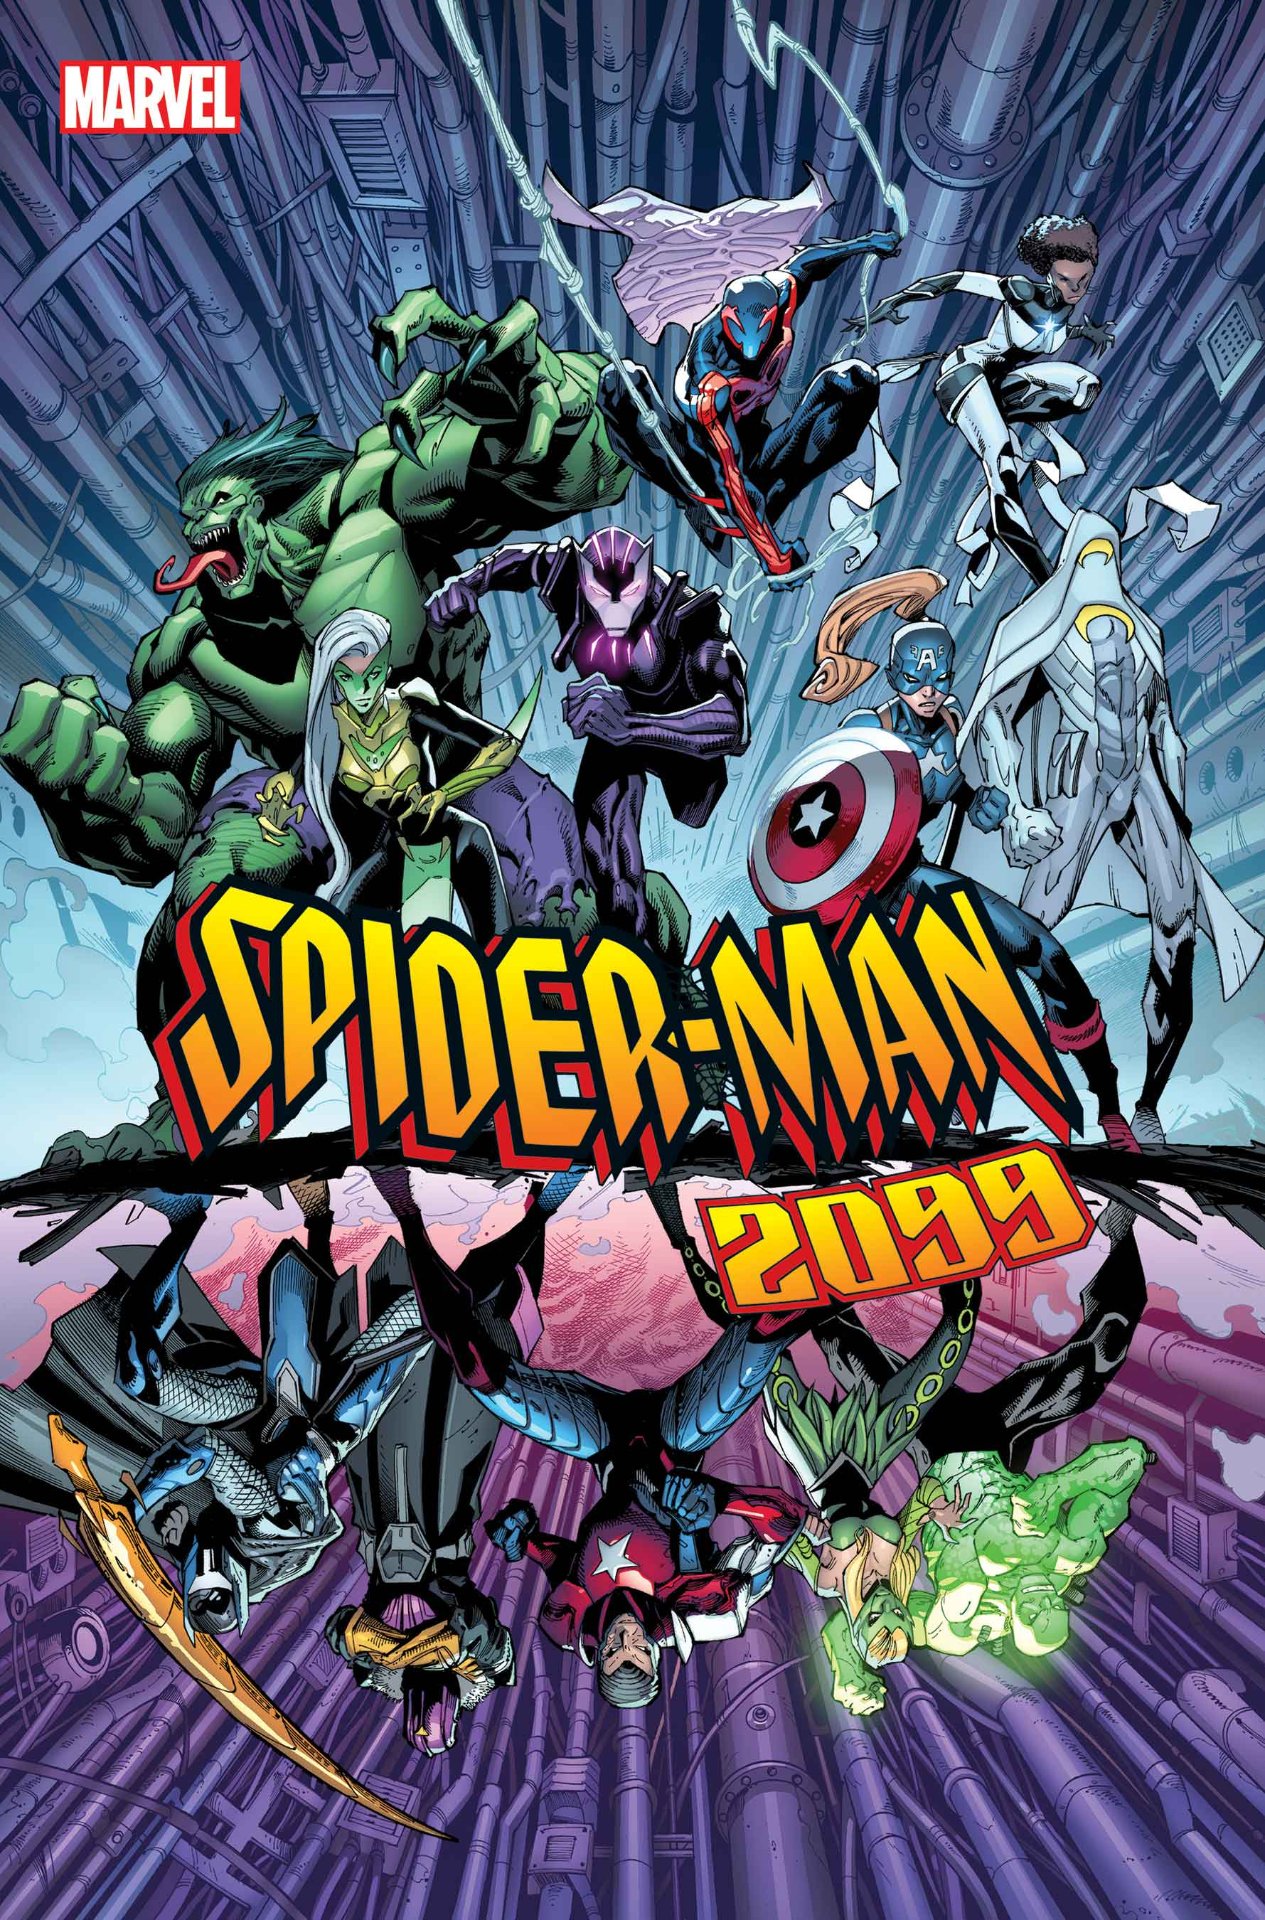 Marvel Comics June 2022 solicitations